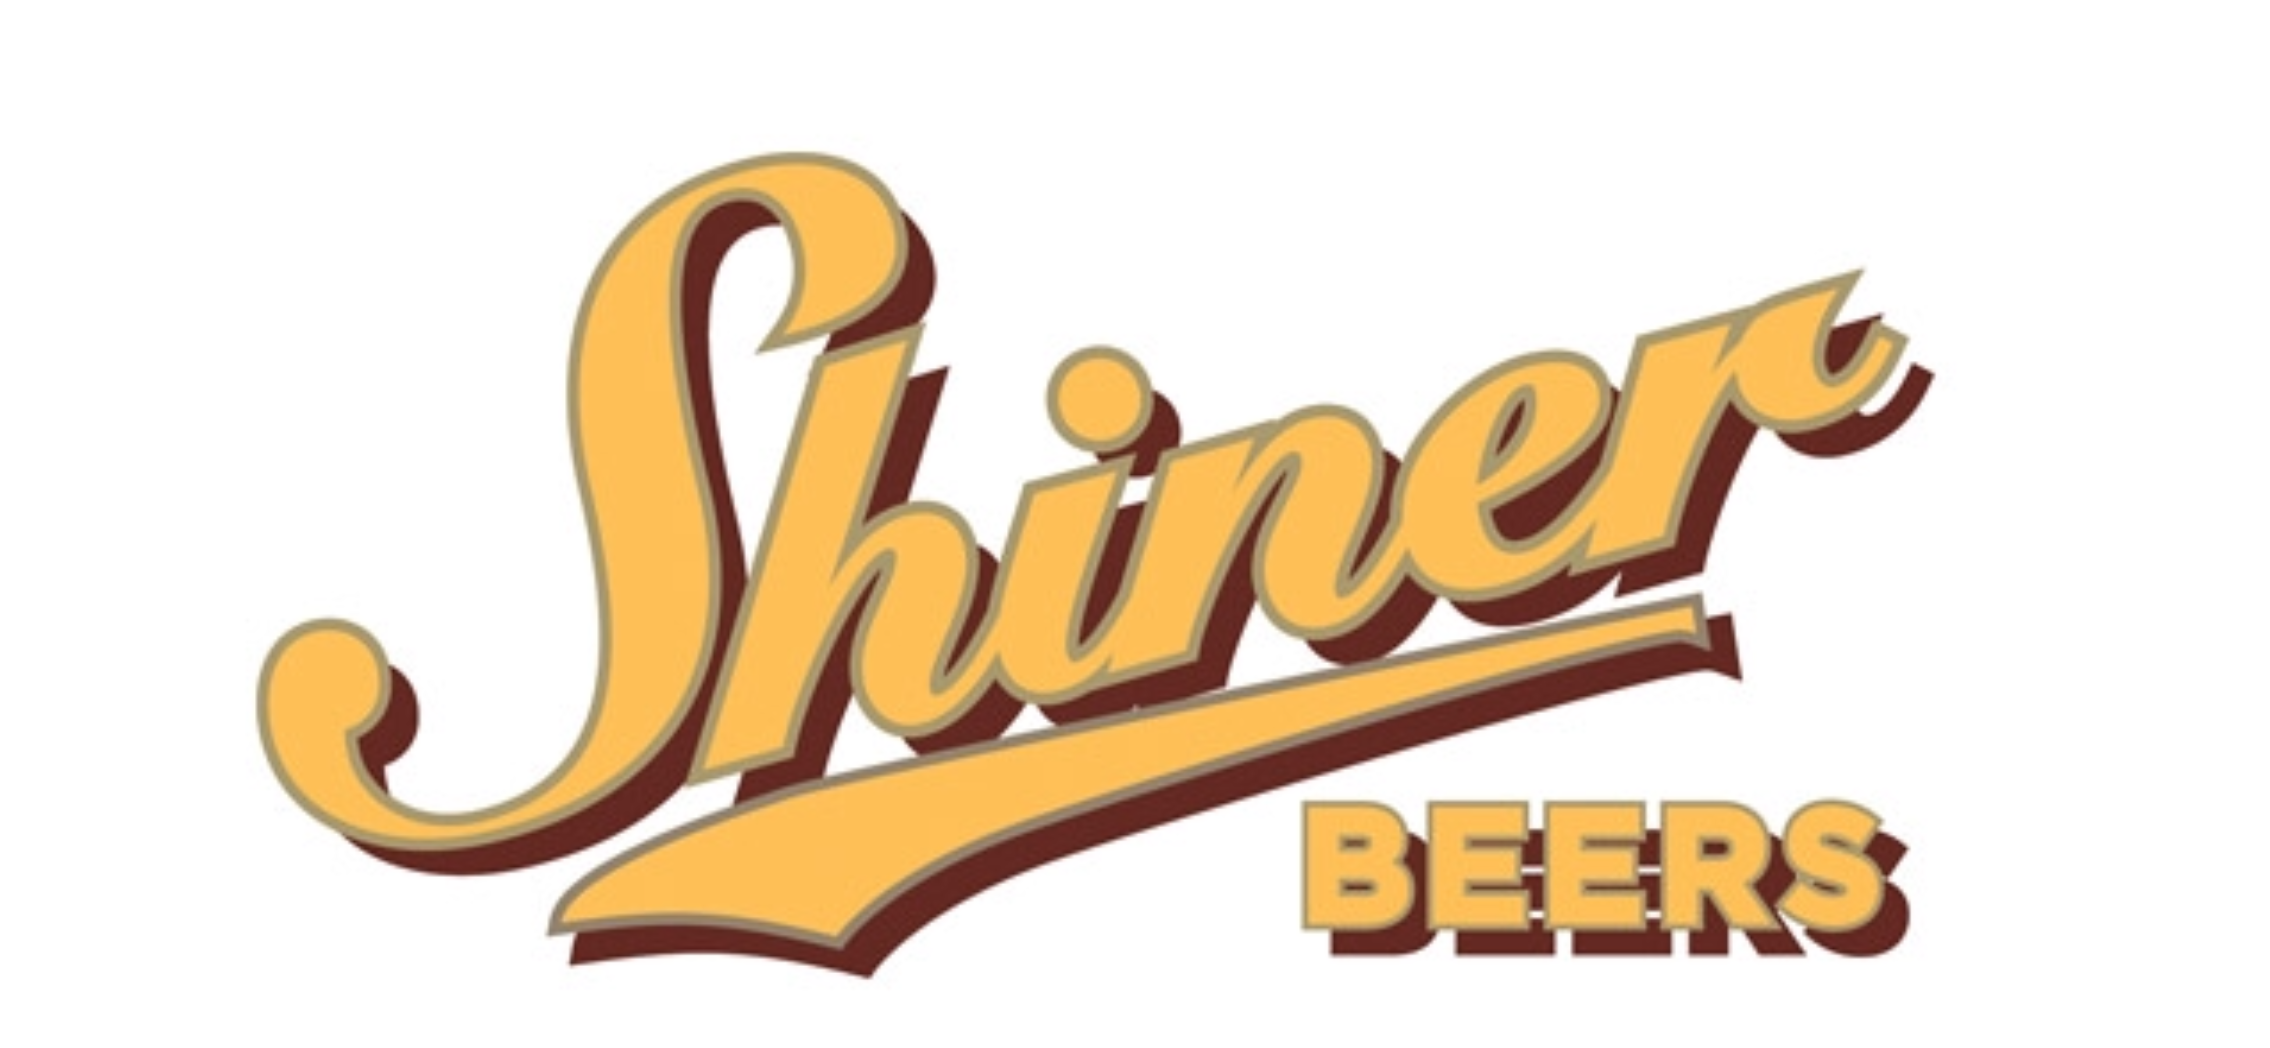 Shiner Beer Logo.